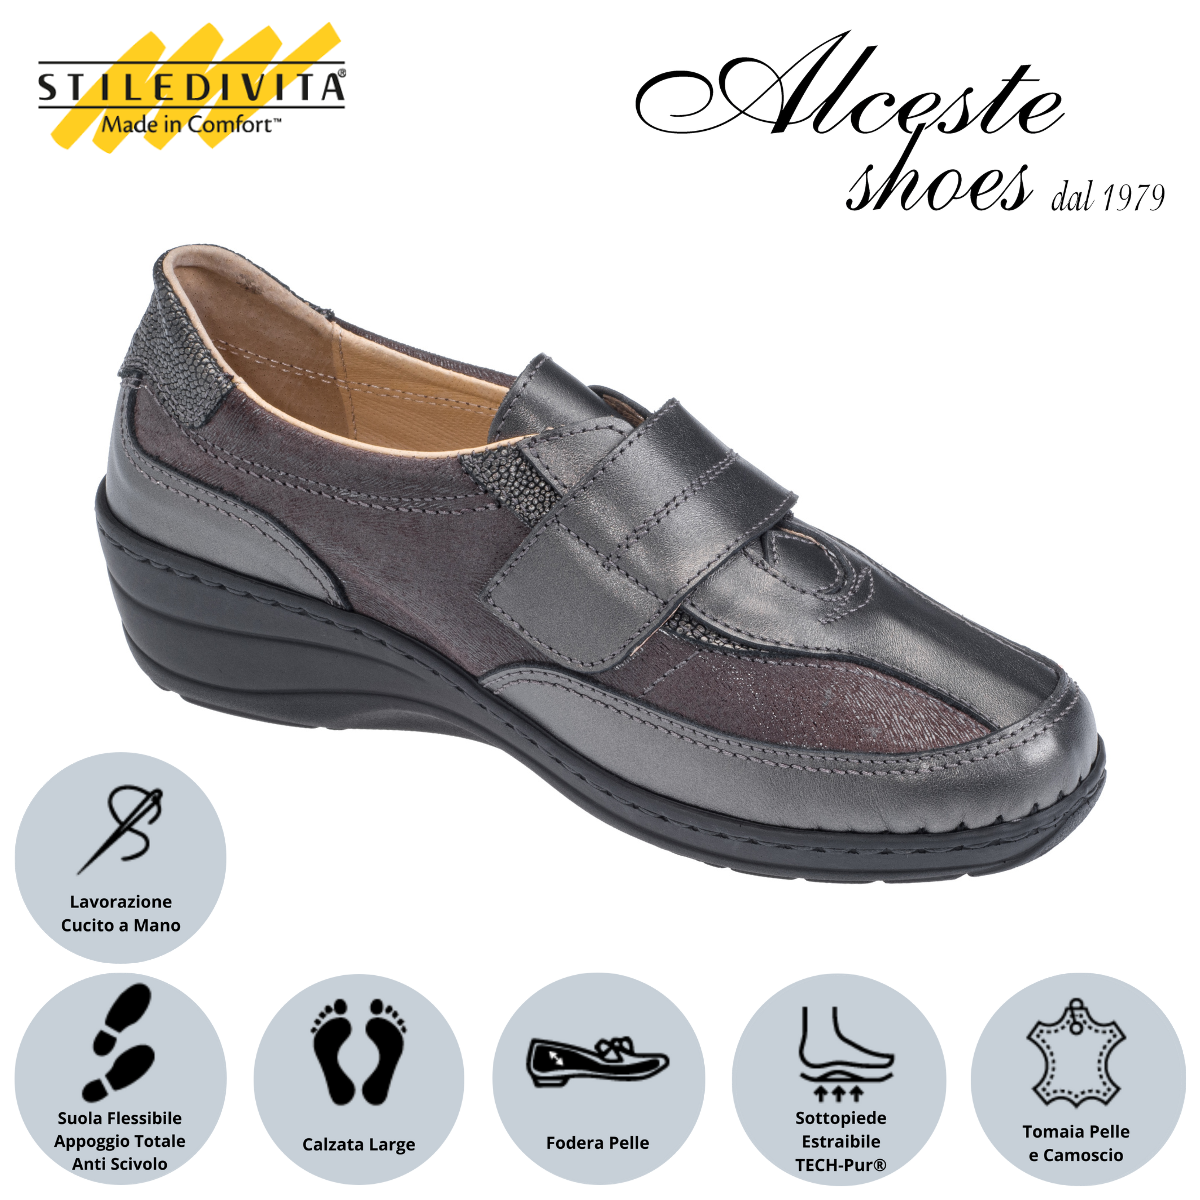 Scarpa Donna con Velcro e Sottopiede Estraibile "Stiledivita" Art. 7256 Pelle e Camoscio Antracite Alceste Shoes 44